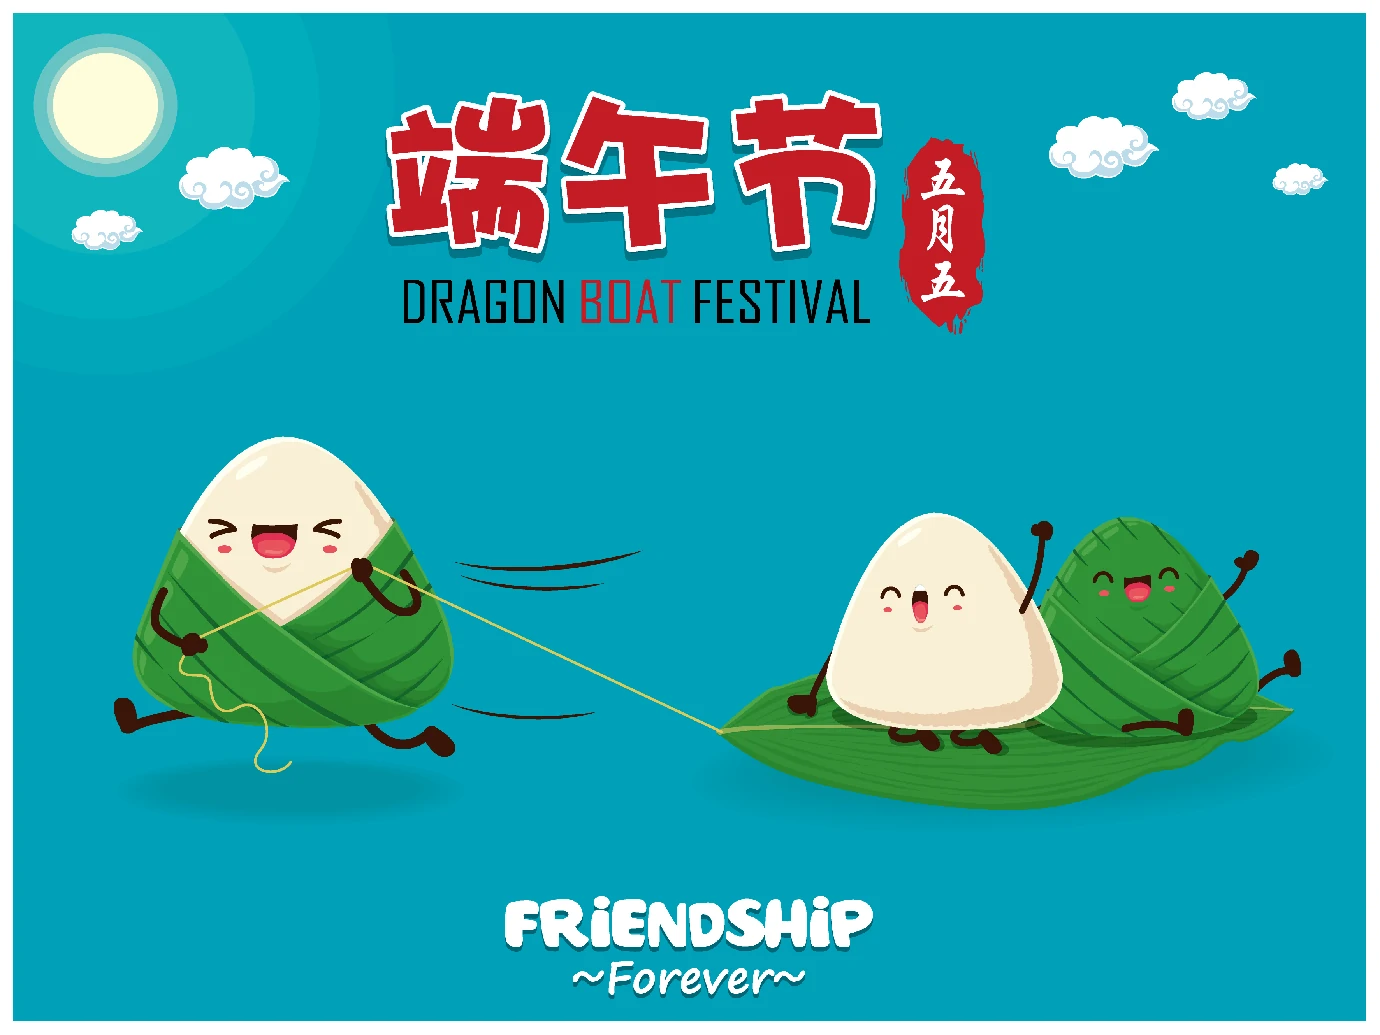 中国传统节日卡通手绘端午节赛龙舟粽子插画海报AI矢量设计素材【074】